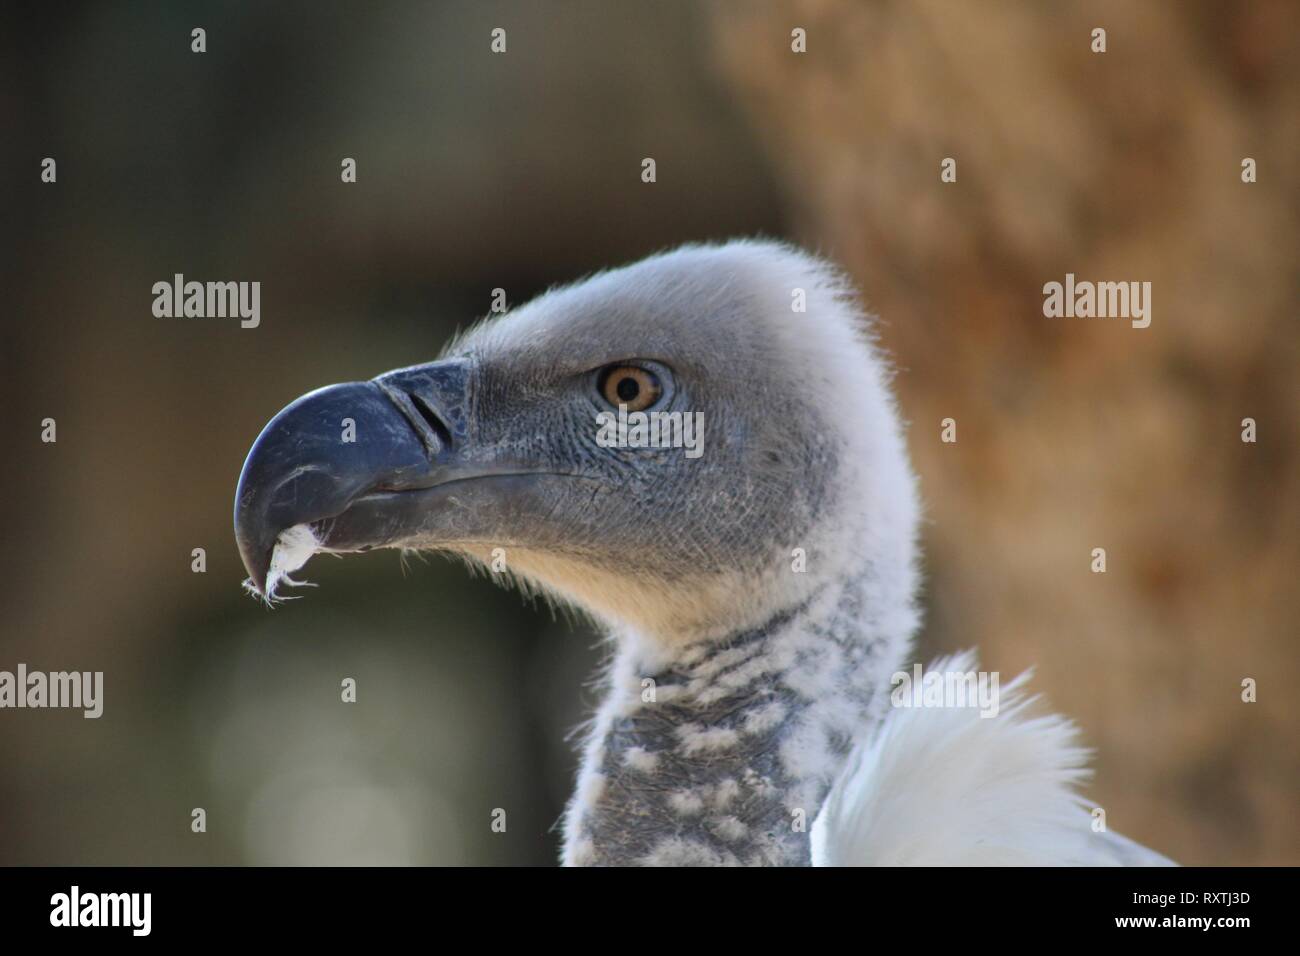 La testa del capo Griffon o Cape Vulture contro uno sfondo morbido Foto Stock